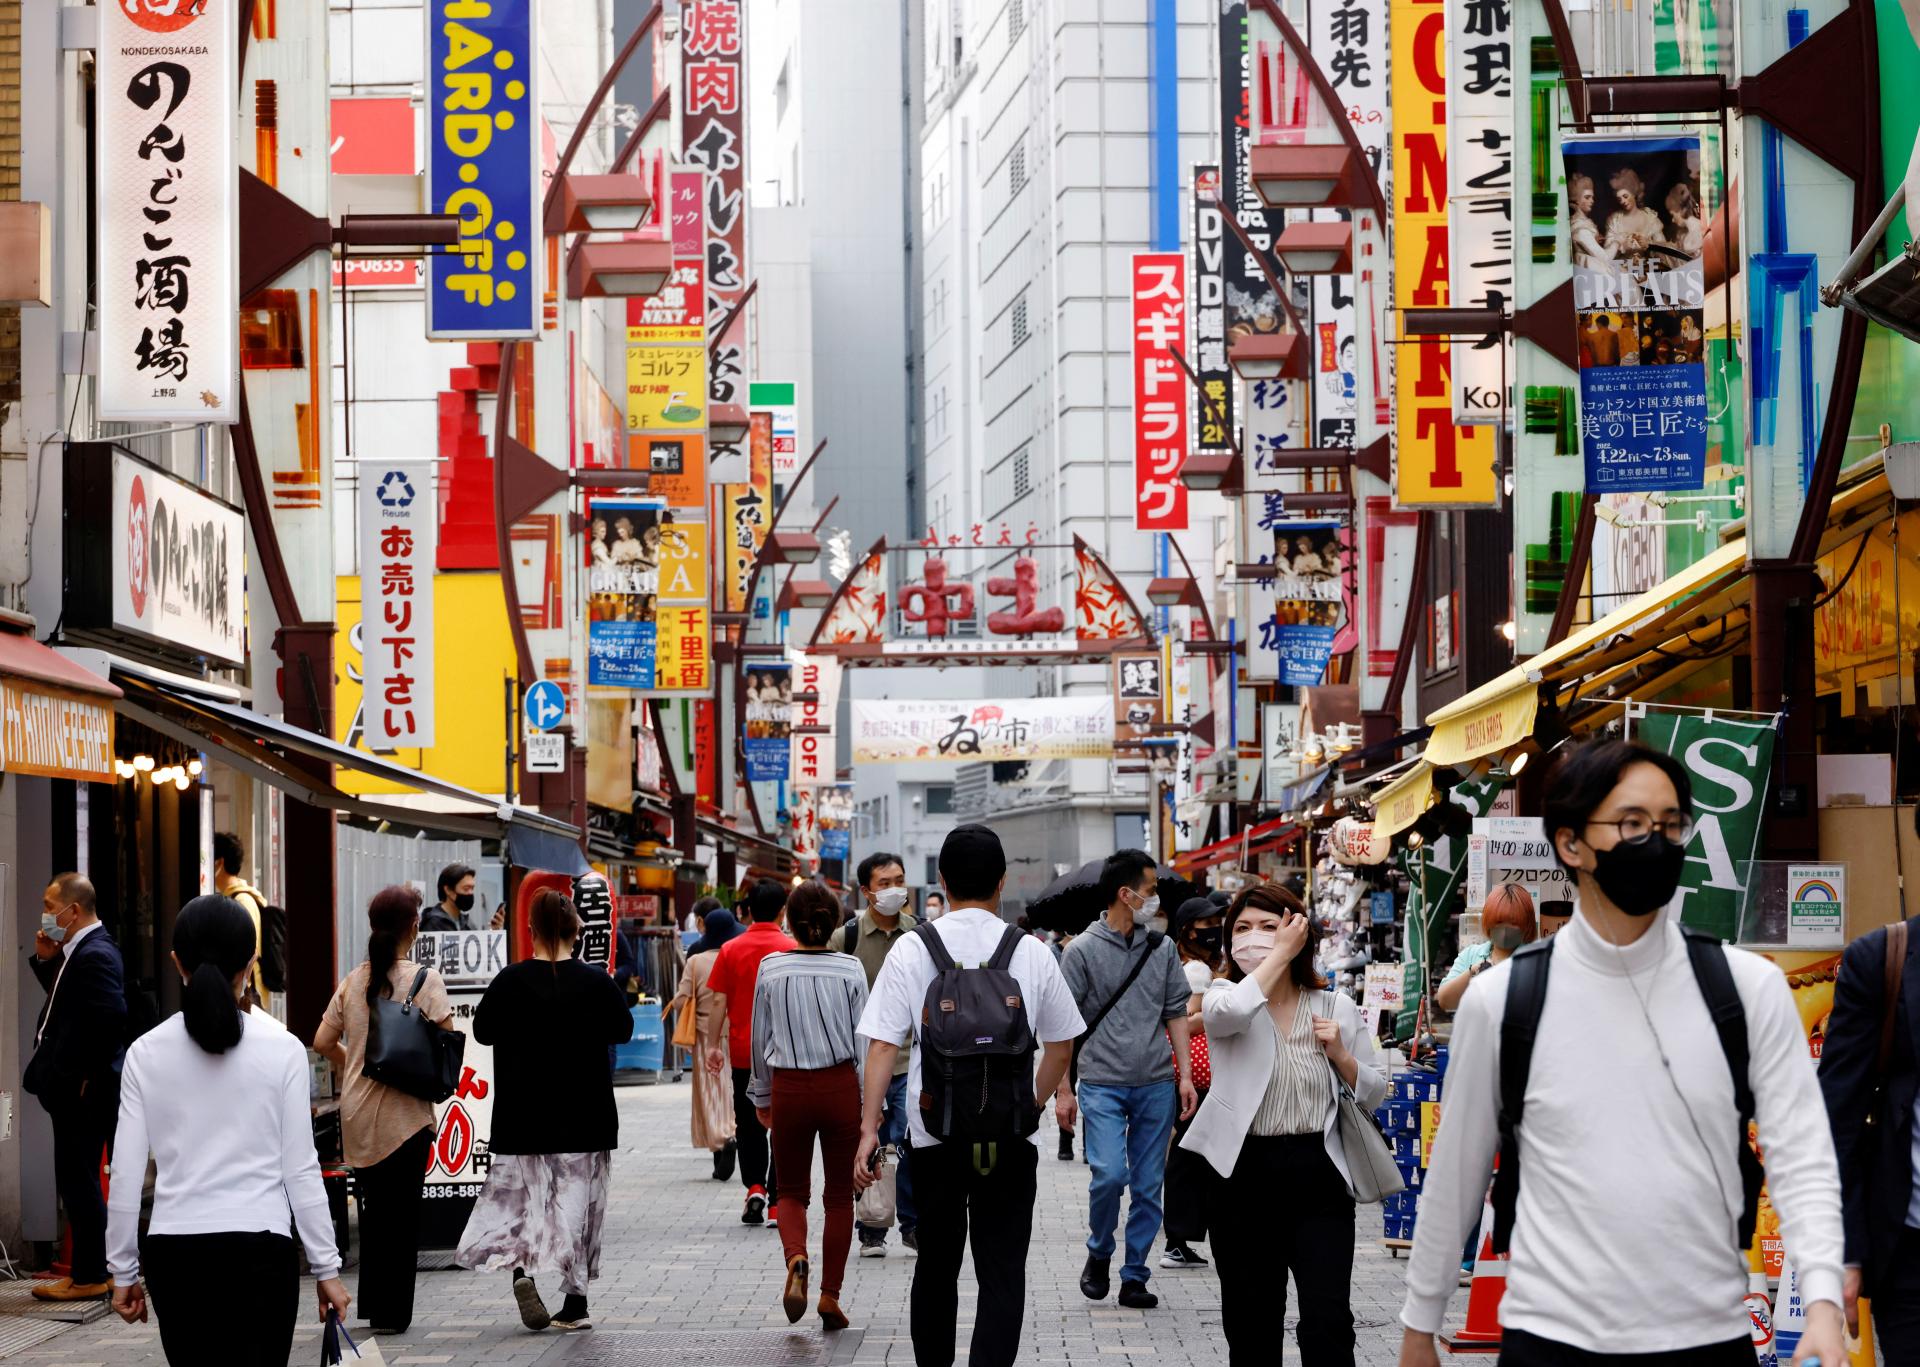 Počet cudzincov v Japonsku prudko rastie, zatiaľ čo klesá počet jeho občanov